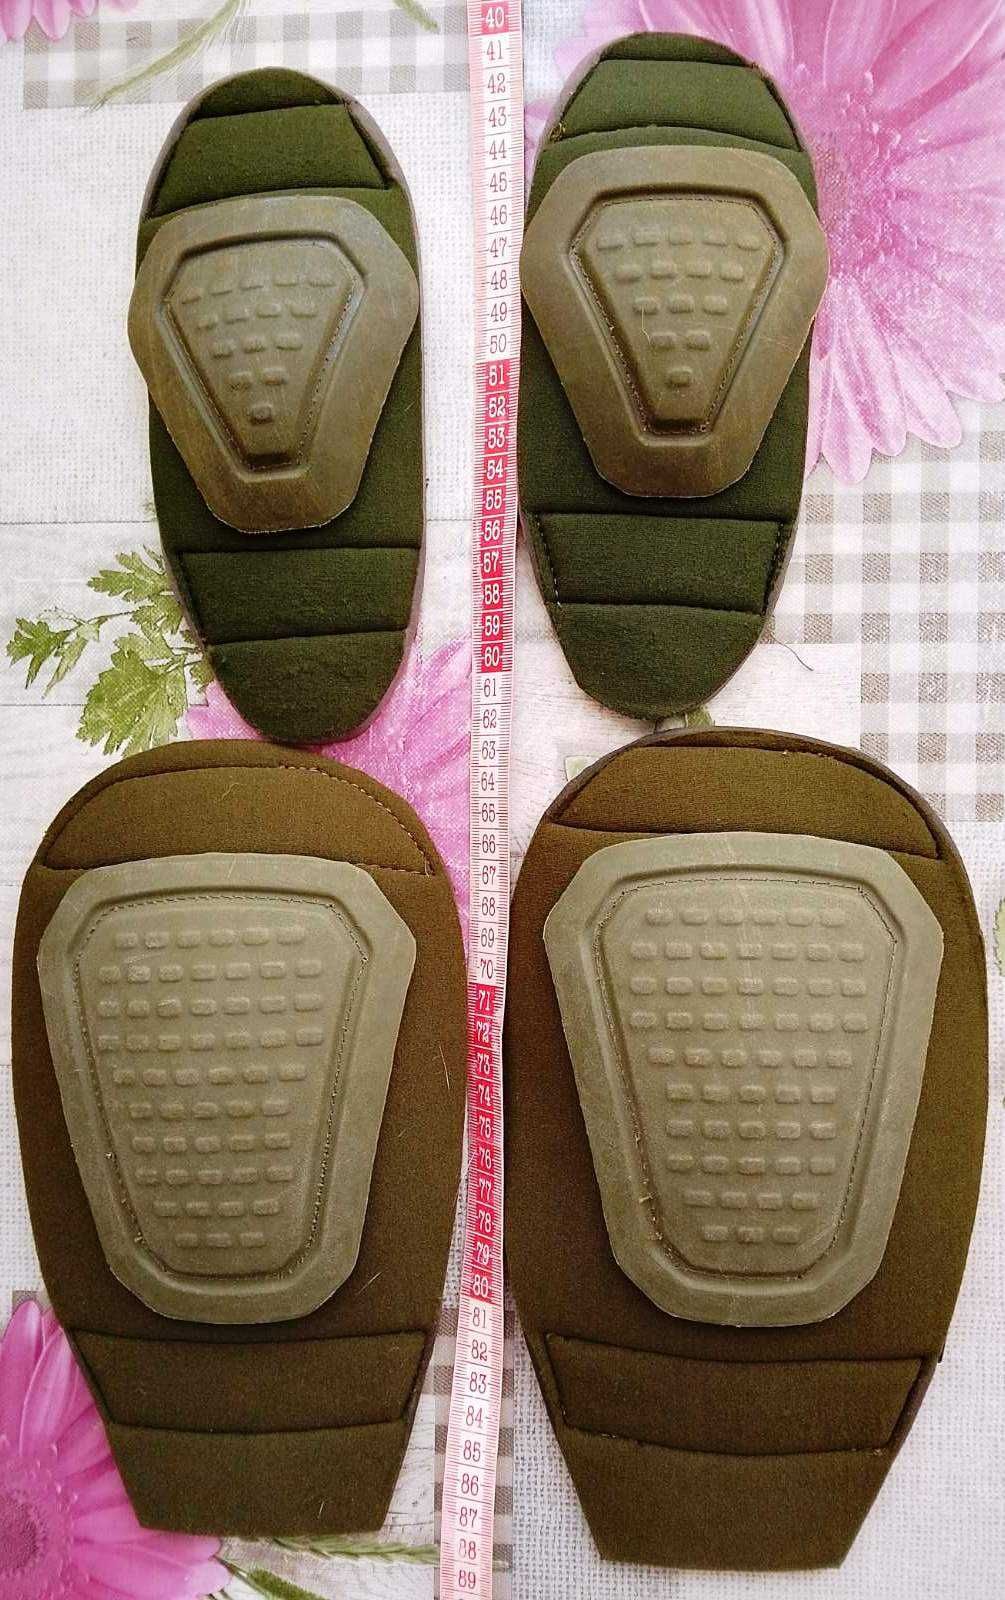 Вставной комплект защиты фирмы Mil-Tec для коленей и локтей в костюмы.